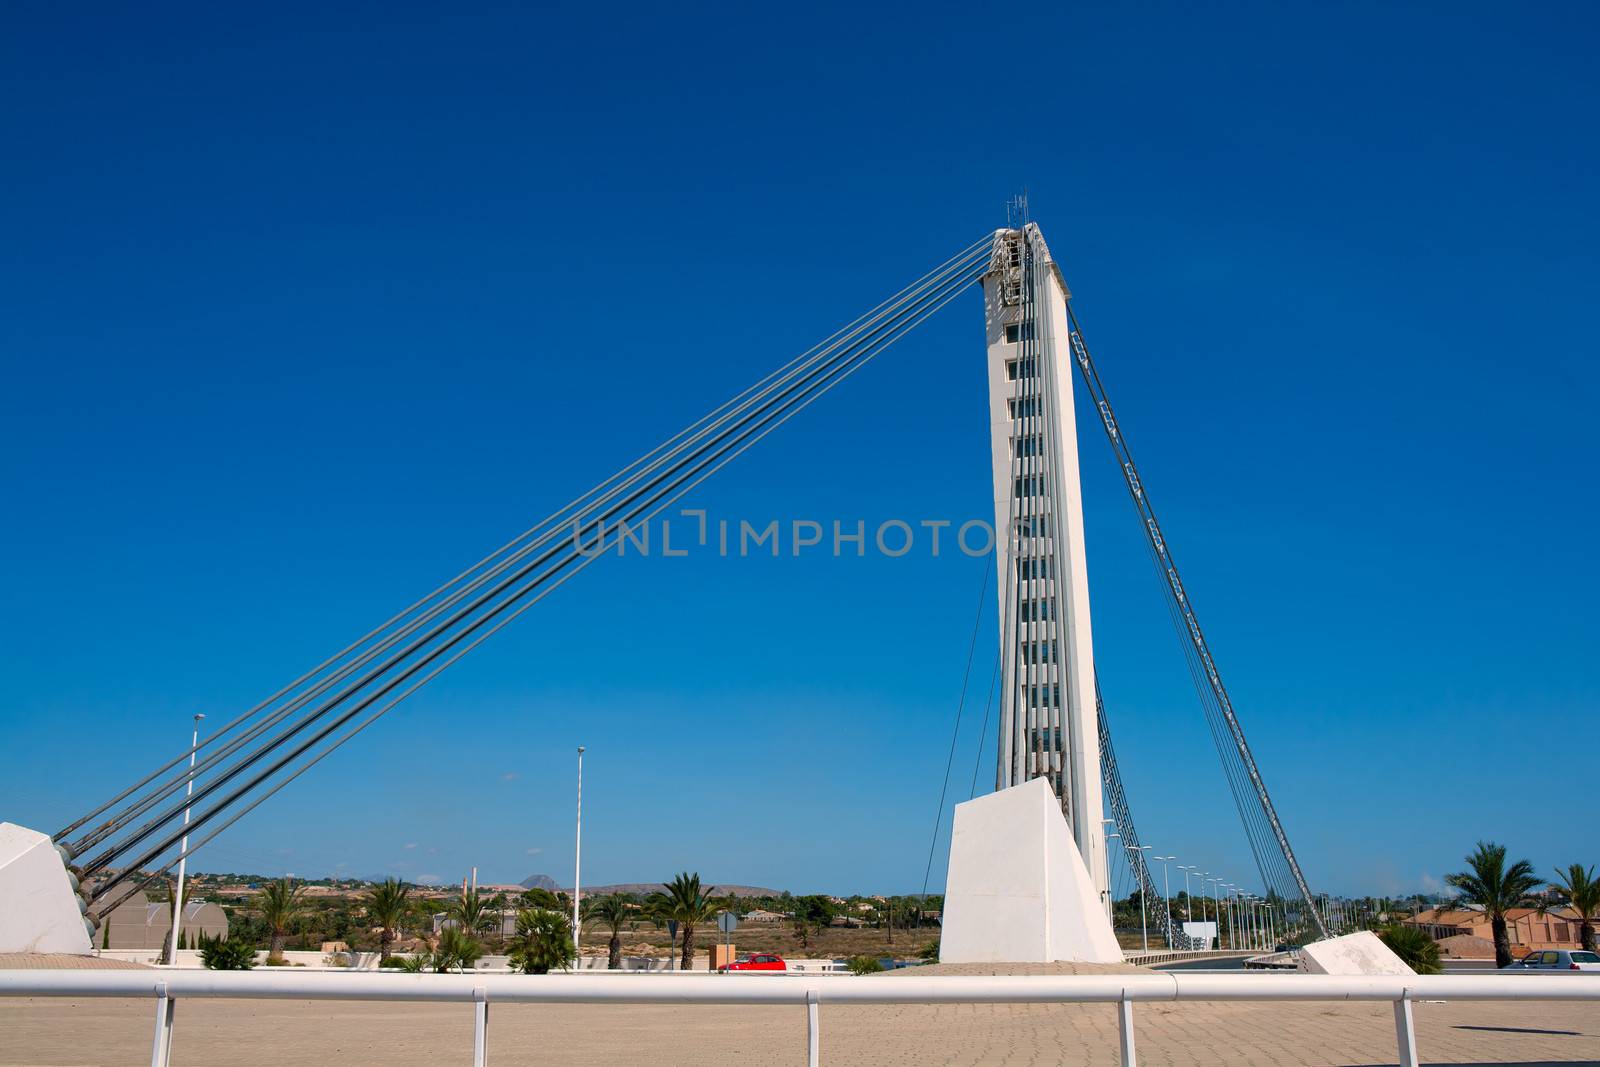 Elche Alicante Bimilenario suspension bridge over Vinalopo by lunamarina